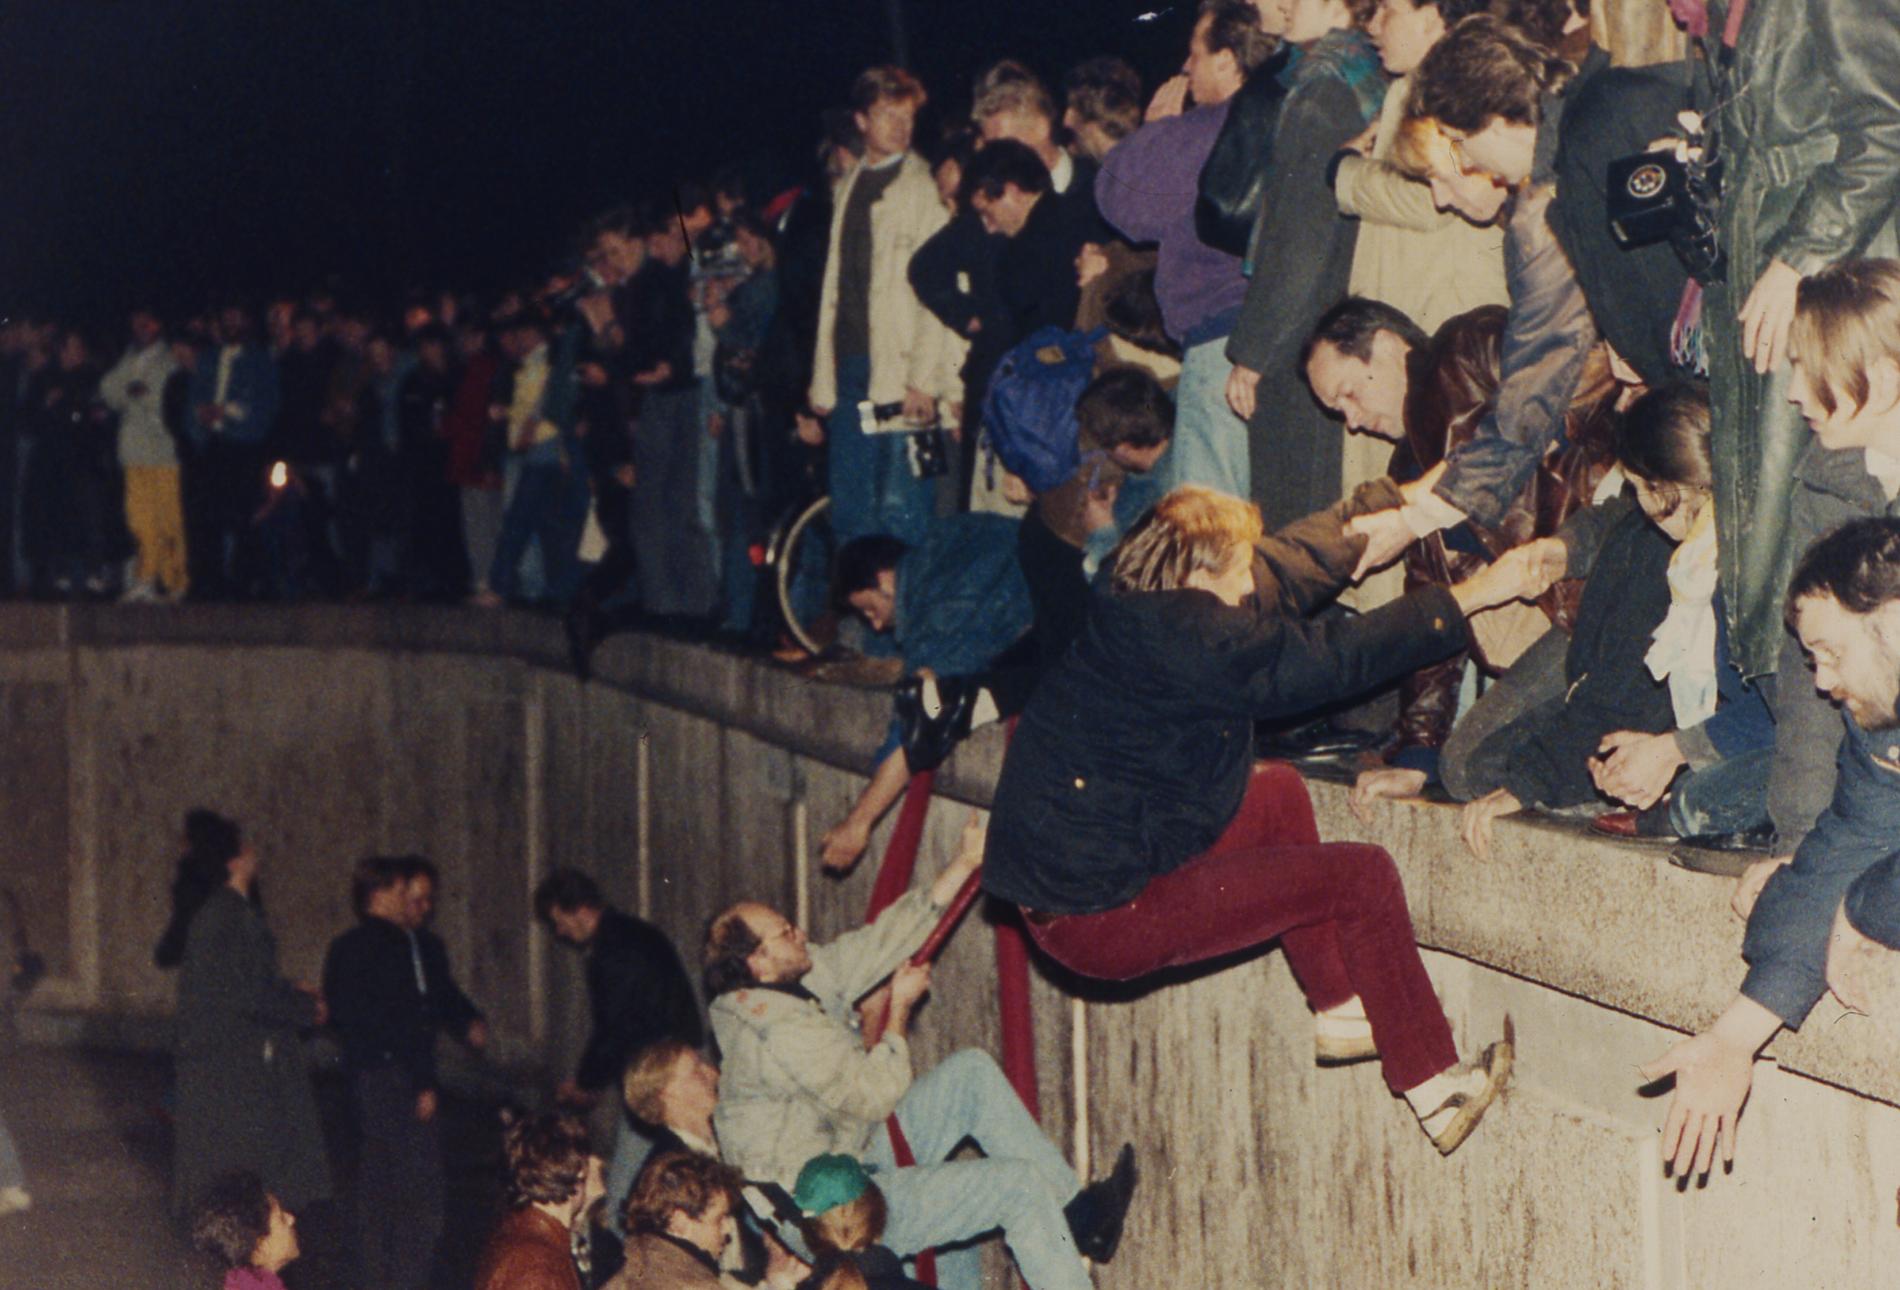 Östtyskar får hjälp av västtyskar att ta sig över Berlinmuren 1989.